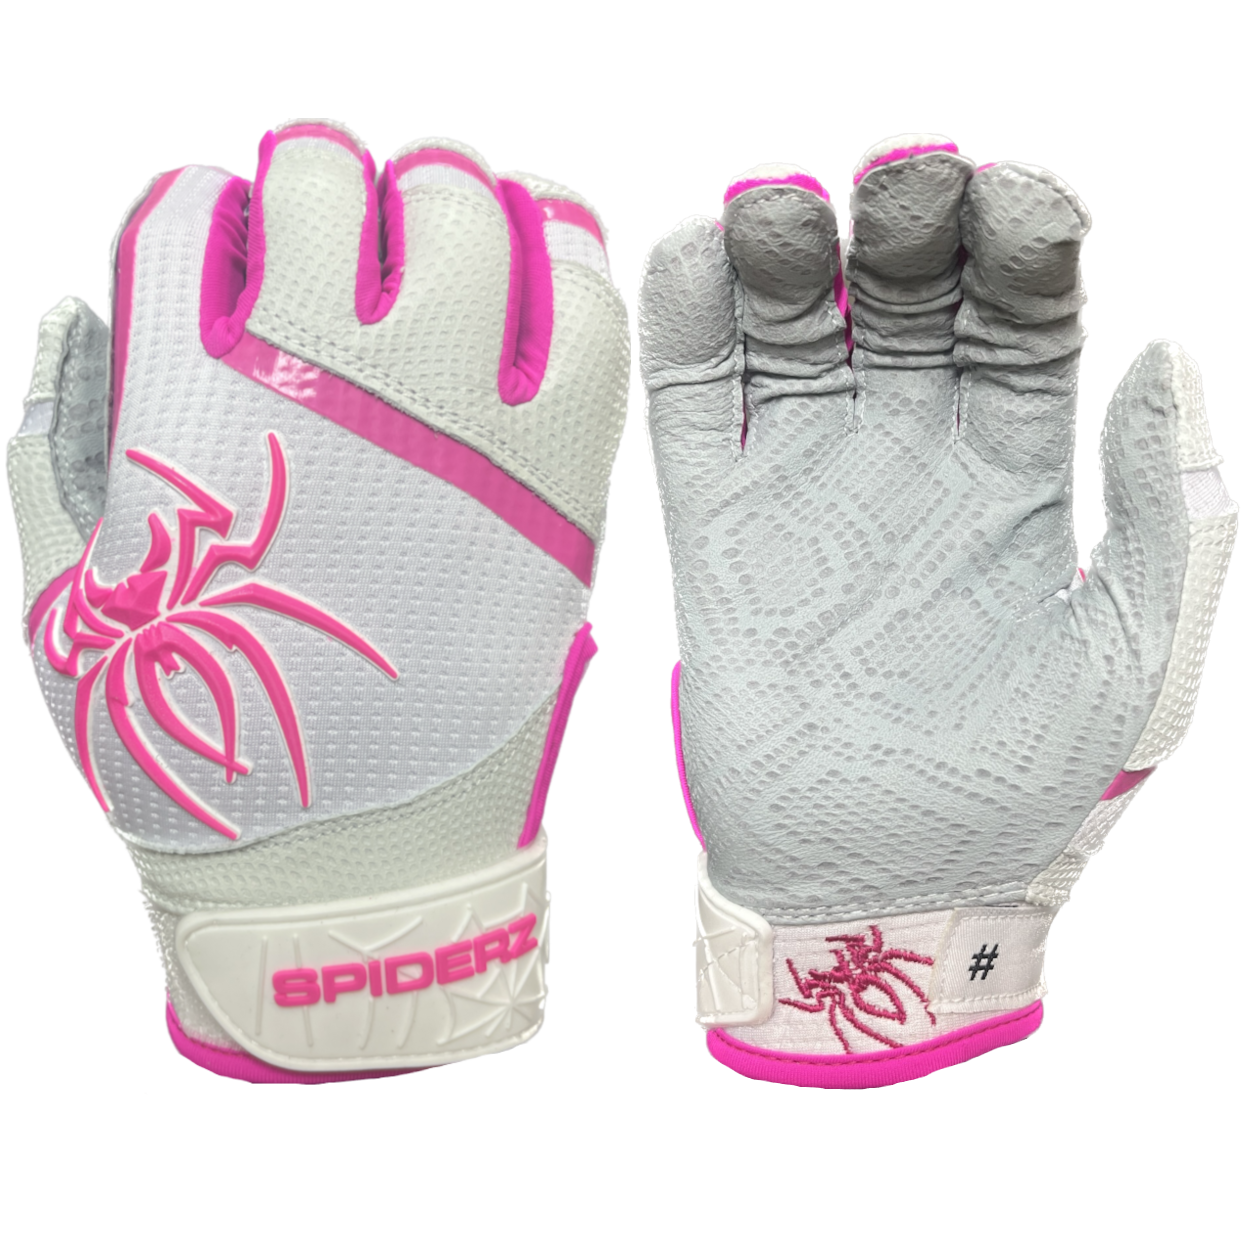 Spiderz PRO Batting Gloves - White/Pink